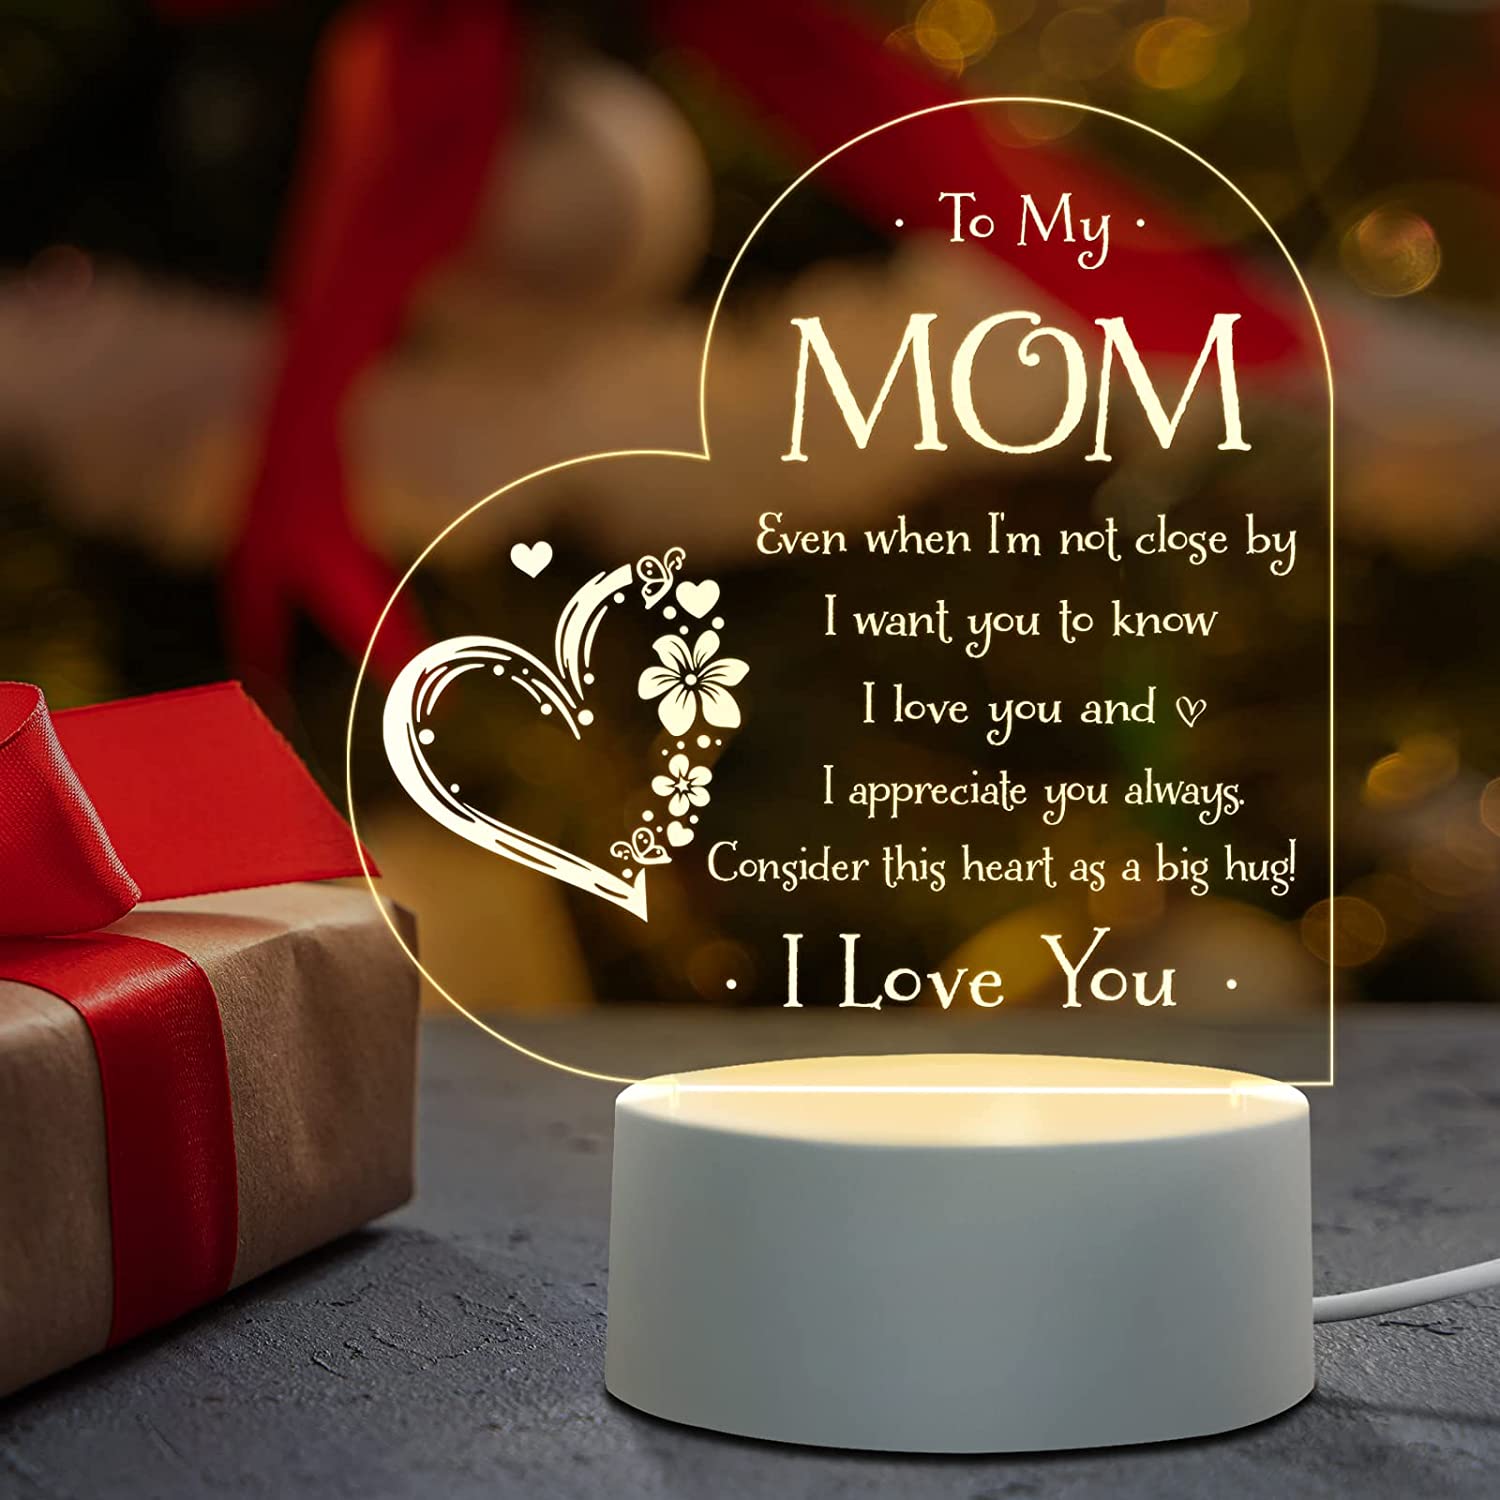  Regalos de Navidad para mamá, regalos para mamá de hijo, hija,  regalos de cumpleaños para mamá, lámpara nocturna grabada, las mejores  ideas de regalo para el día de la madre, regalos